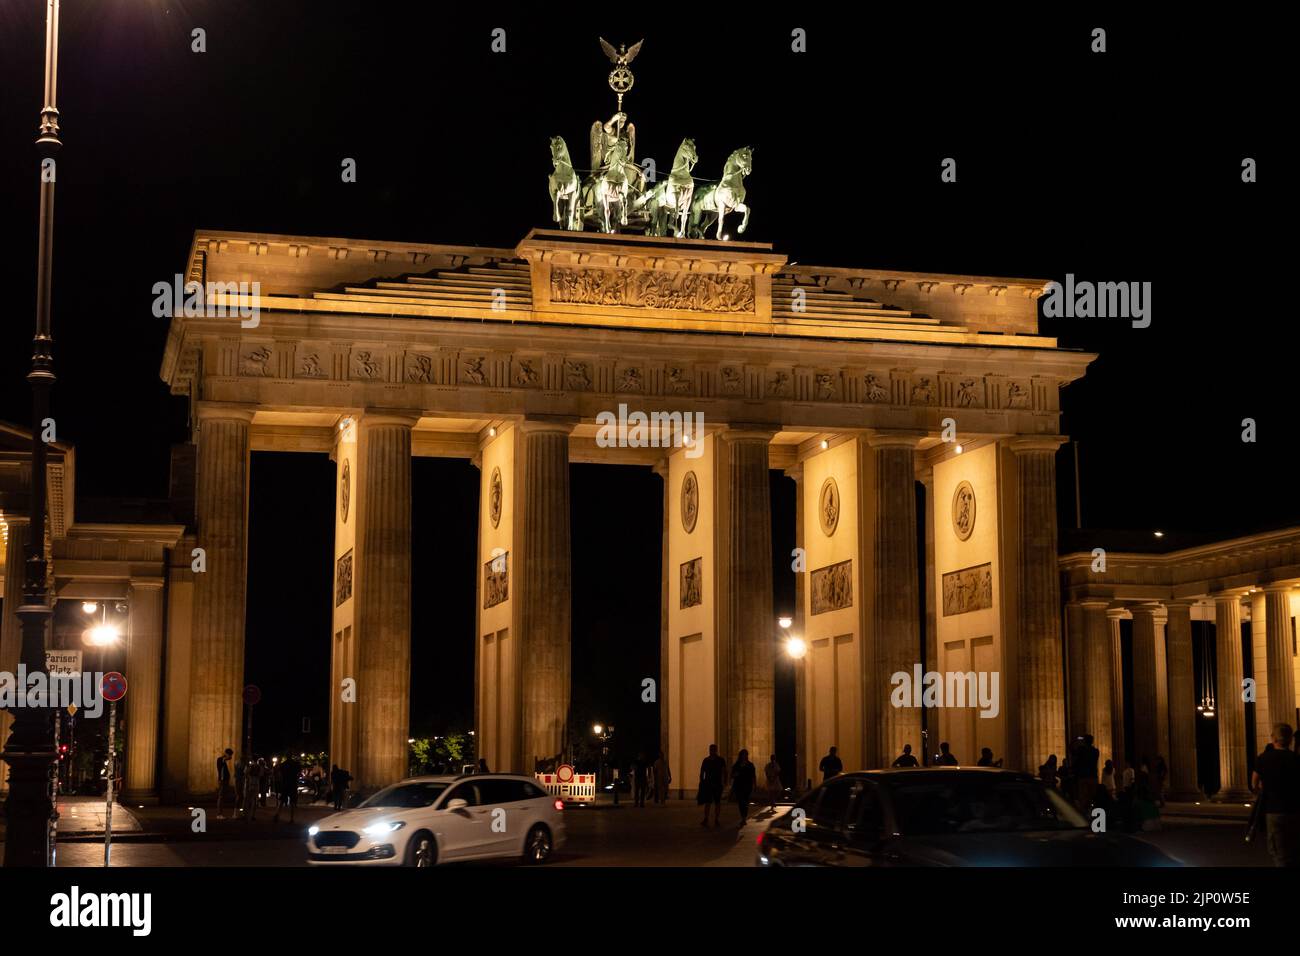 Das Brandenburger Tor ist bei Nacht beleuchtet. Dieses Gebäude ist ein Wahrzeichen Berlins und ein berühmtes Reiseziel. Die Menschen sind am Pariser Platz. Stockfoto